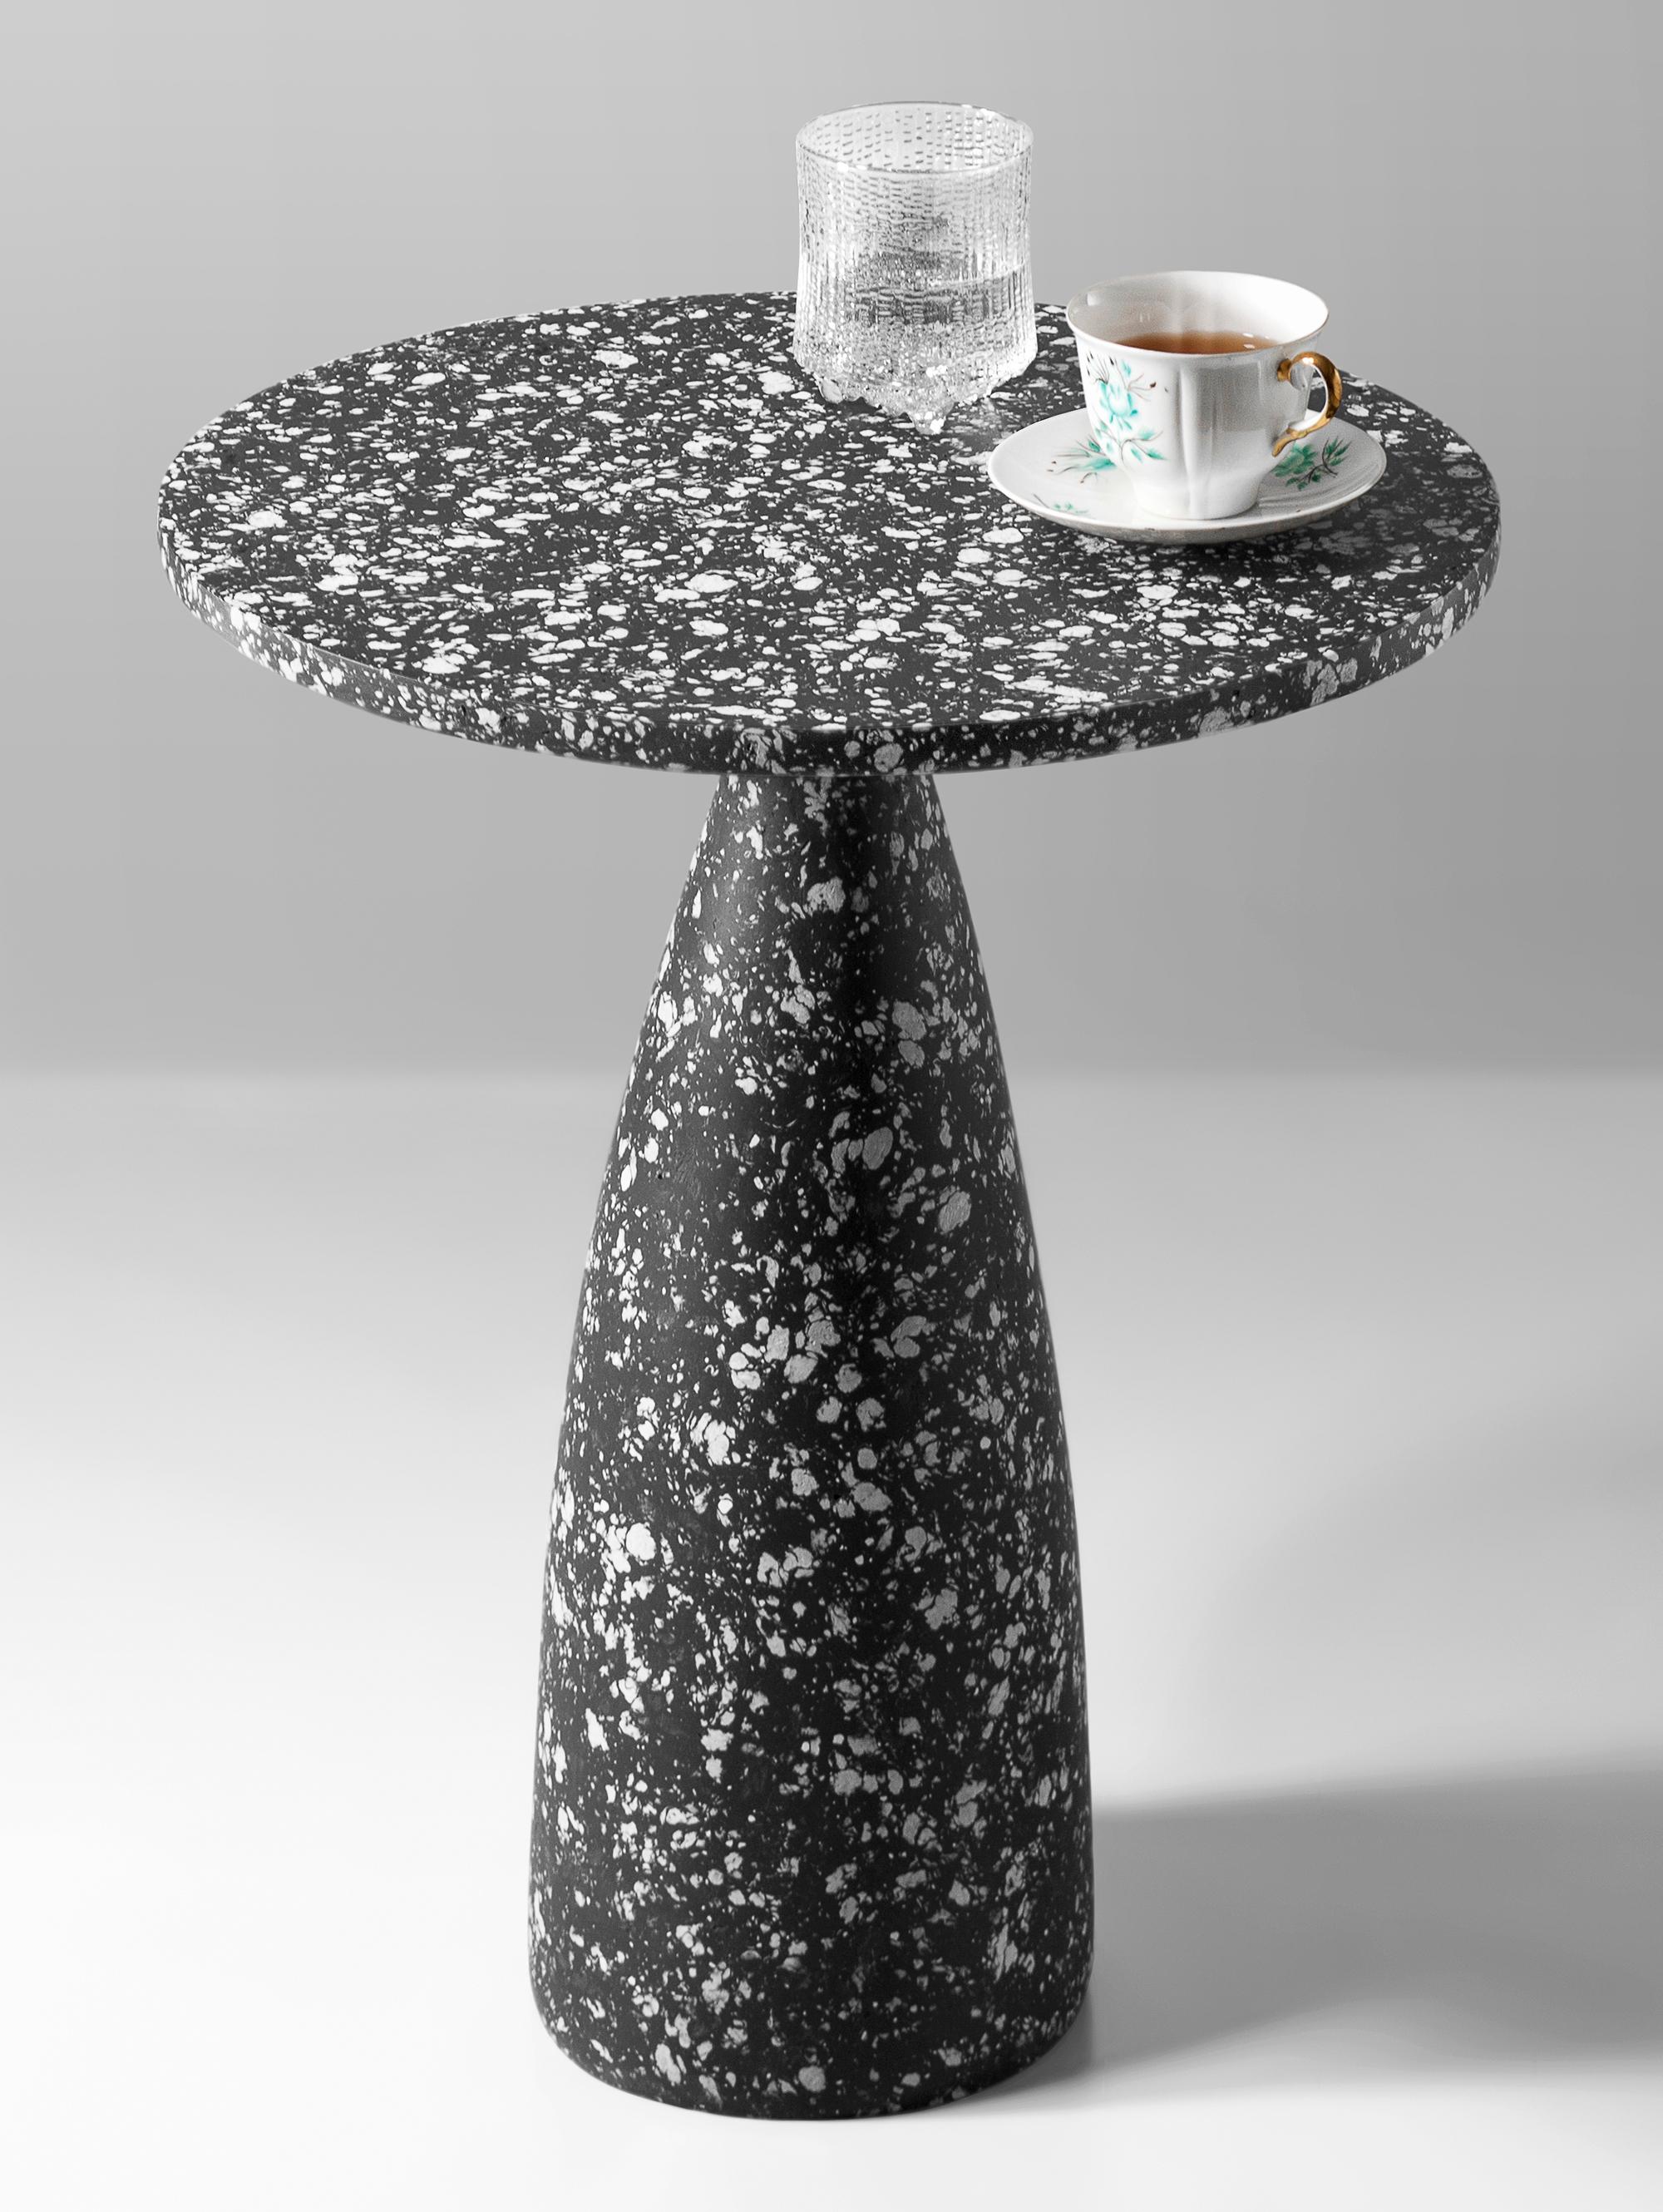 Table d'appoint noire mouchetée 40 par Kasanai
Dimensions : D 40 x H 50 cm.
MATERIAL : Ciment, papier recyclé, colle, peinture.
8 kg.

La fusion de la robustesse et de l'élégance, ainsi que le mélange de l'archaïsme et de la modernité. Plus qu'une